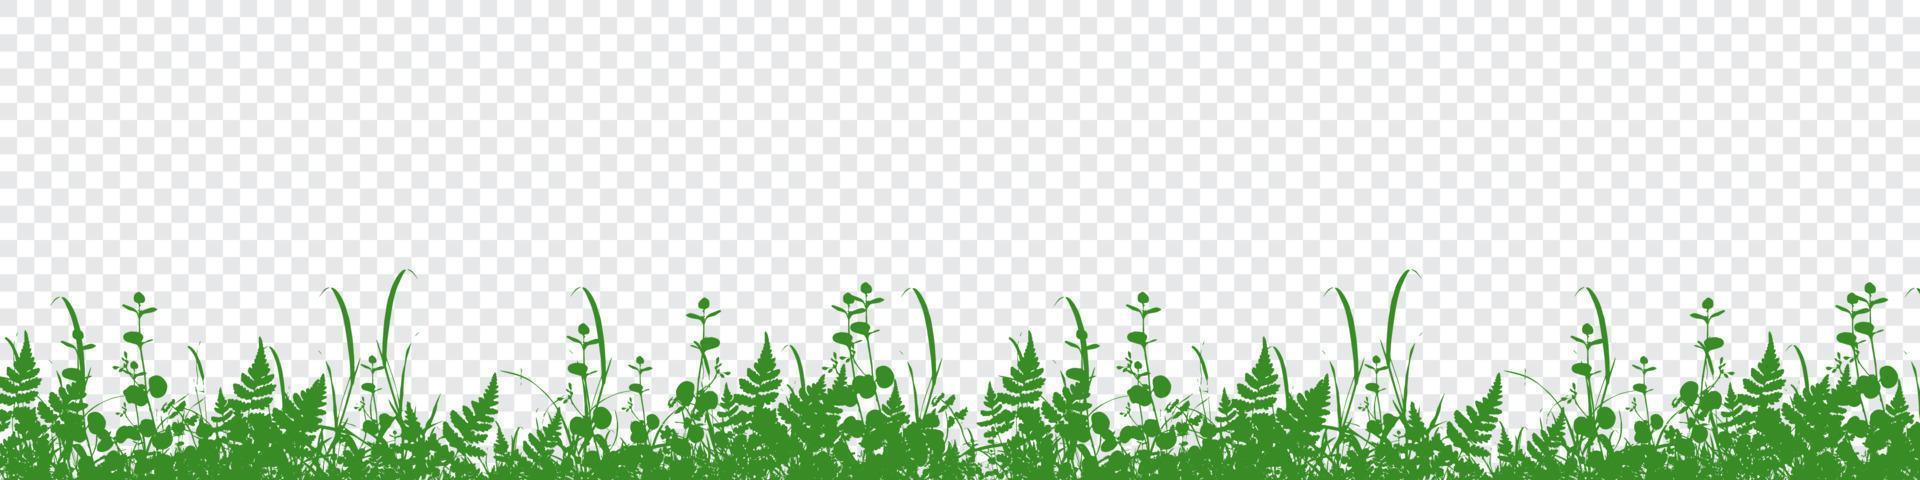 Vektor grüne Grassilhouette. Gras, der Hintergrund wiederholt. grünes Gras Silhouette Hintergrund. Vektor-Illustration